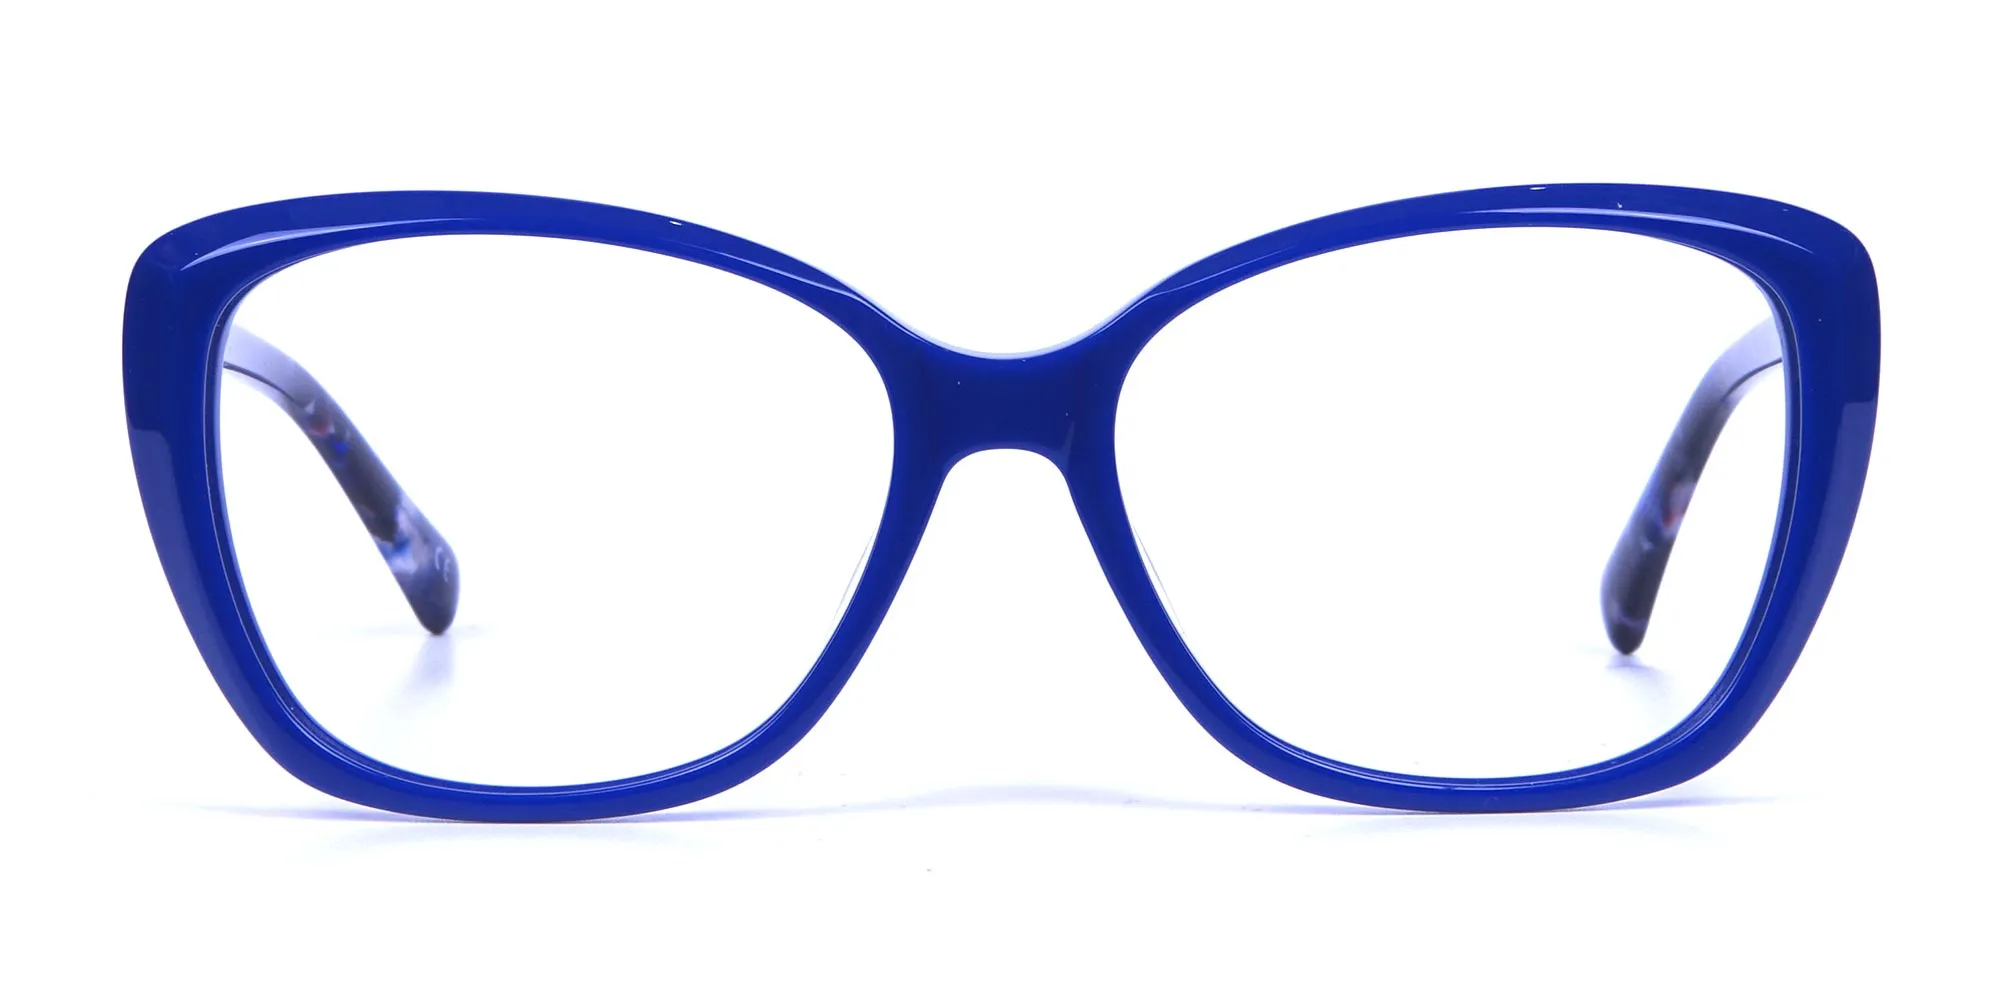 Royal Blue Cat Eye Glasses for Women - 1